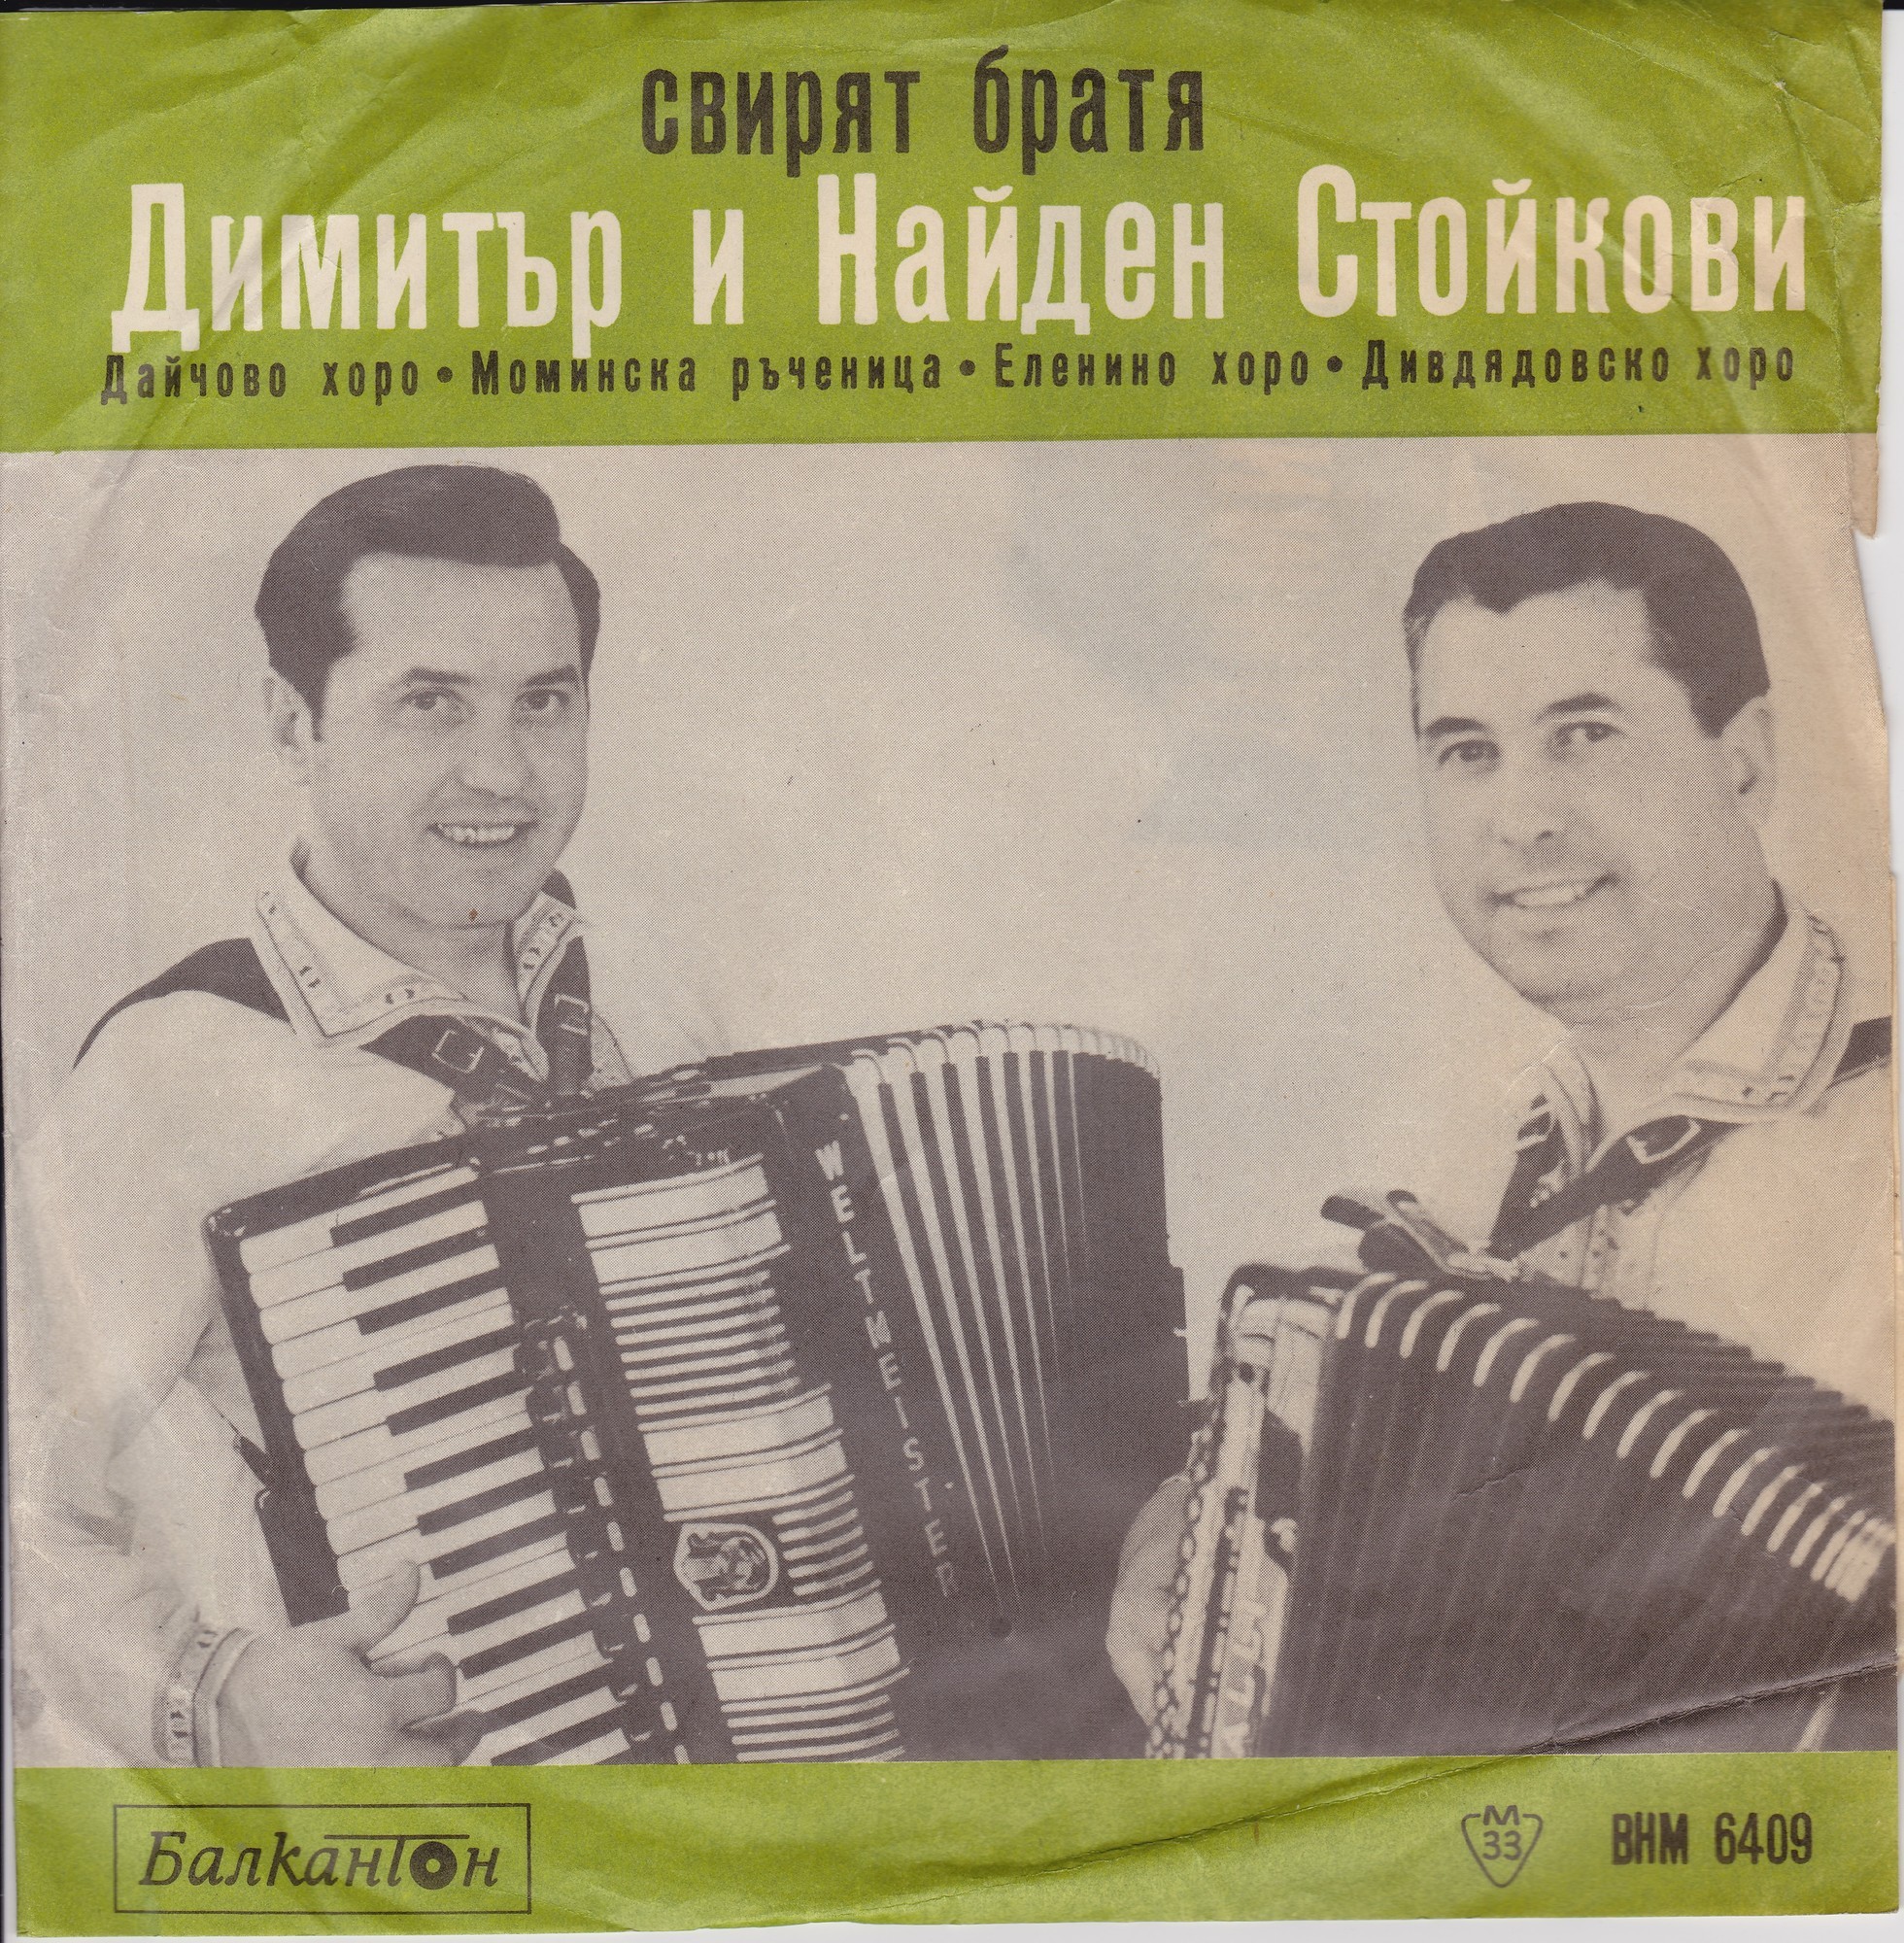 Свирят братя Димитър и Найден Стойкови на акордеон